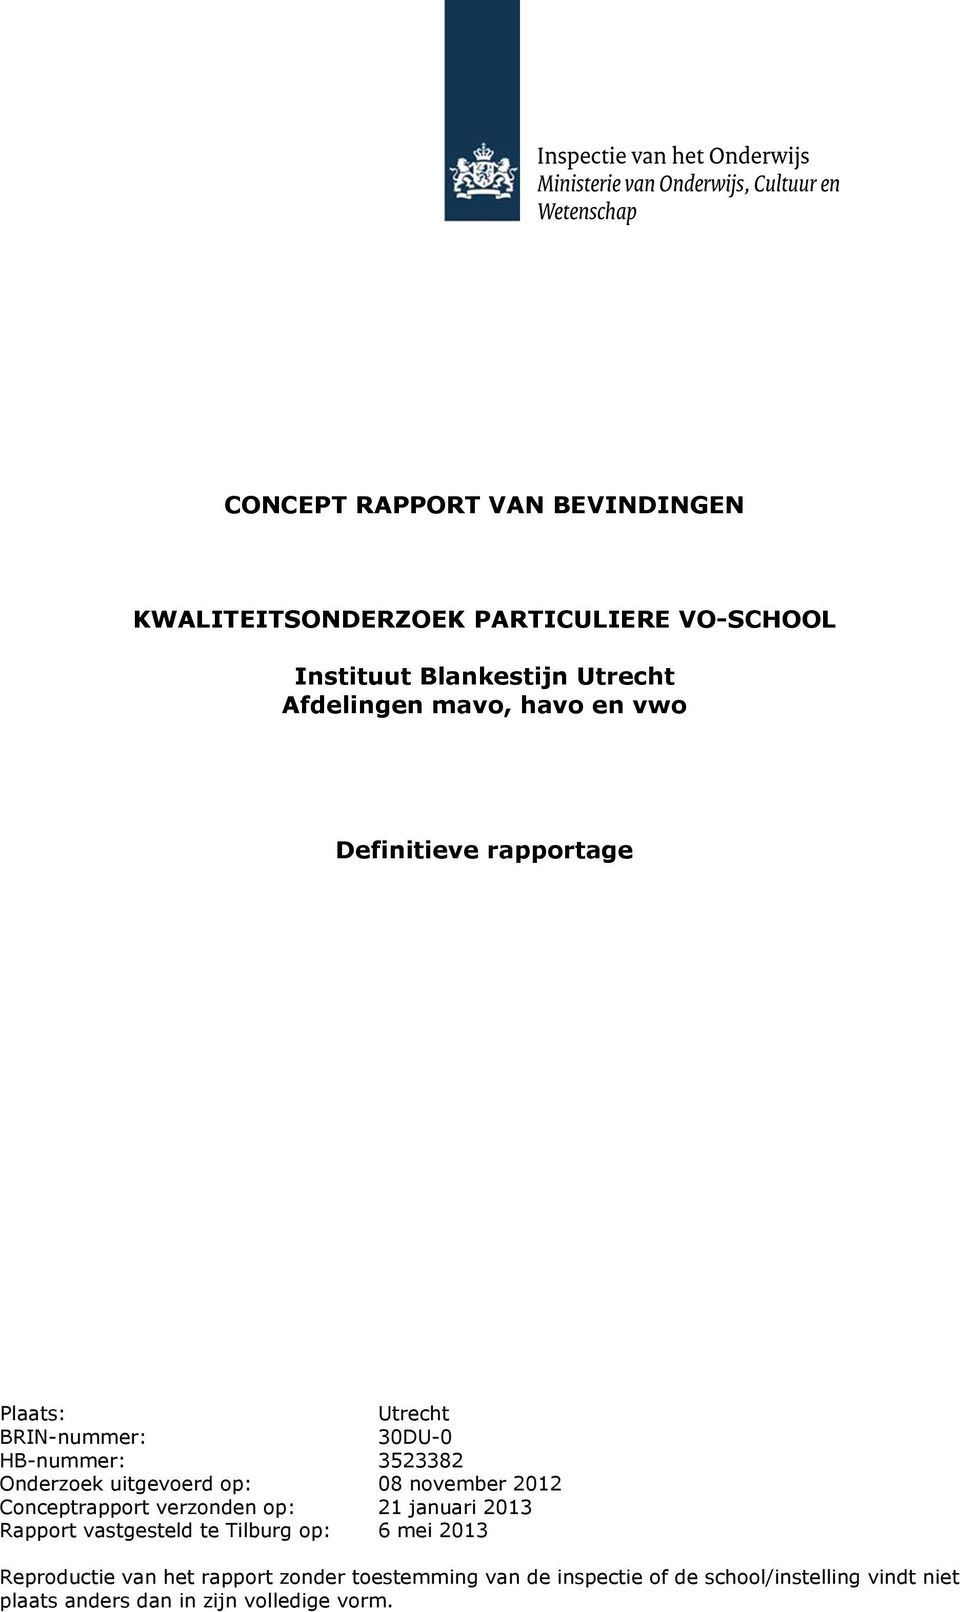 08 noember 2012 Conceptrapport erzonden op: 21 januari 2013 Rapport astgesteld te Tilburg op: 6 mei 2013 Reproductie